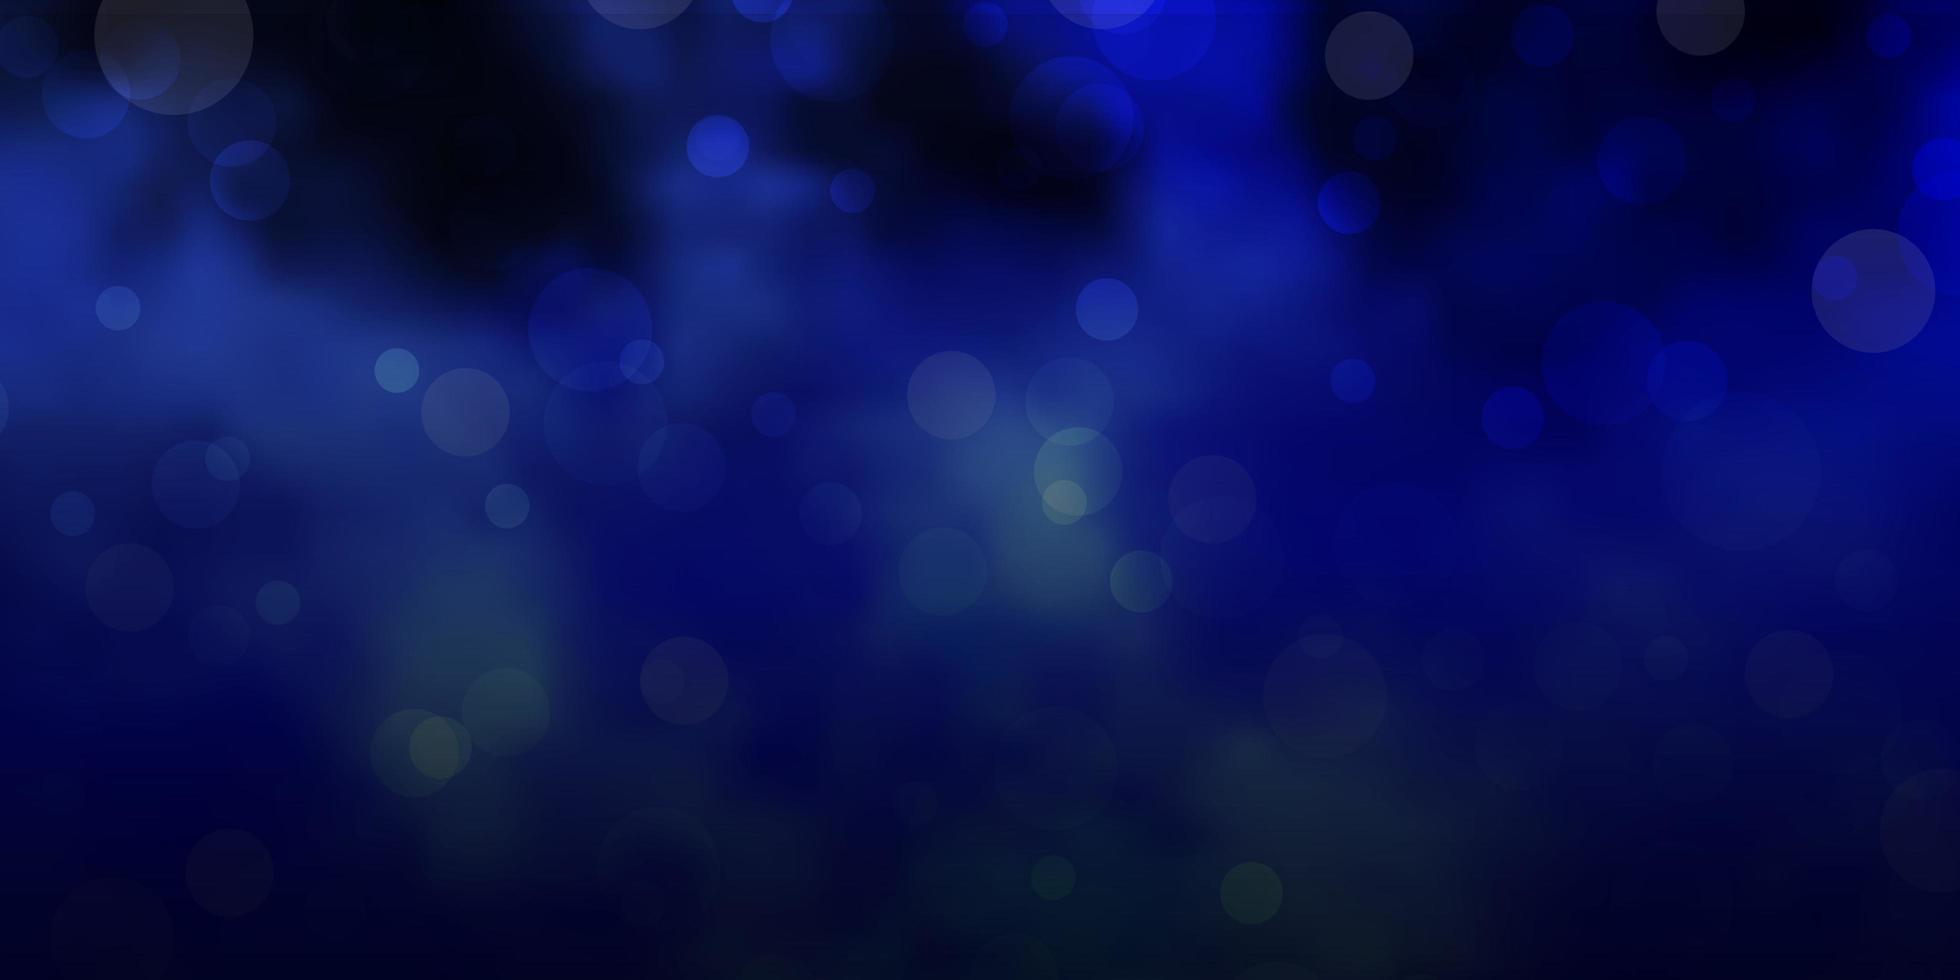 sfondo vettoriale azzurro con bolle.